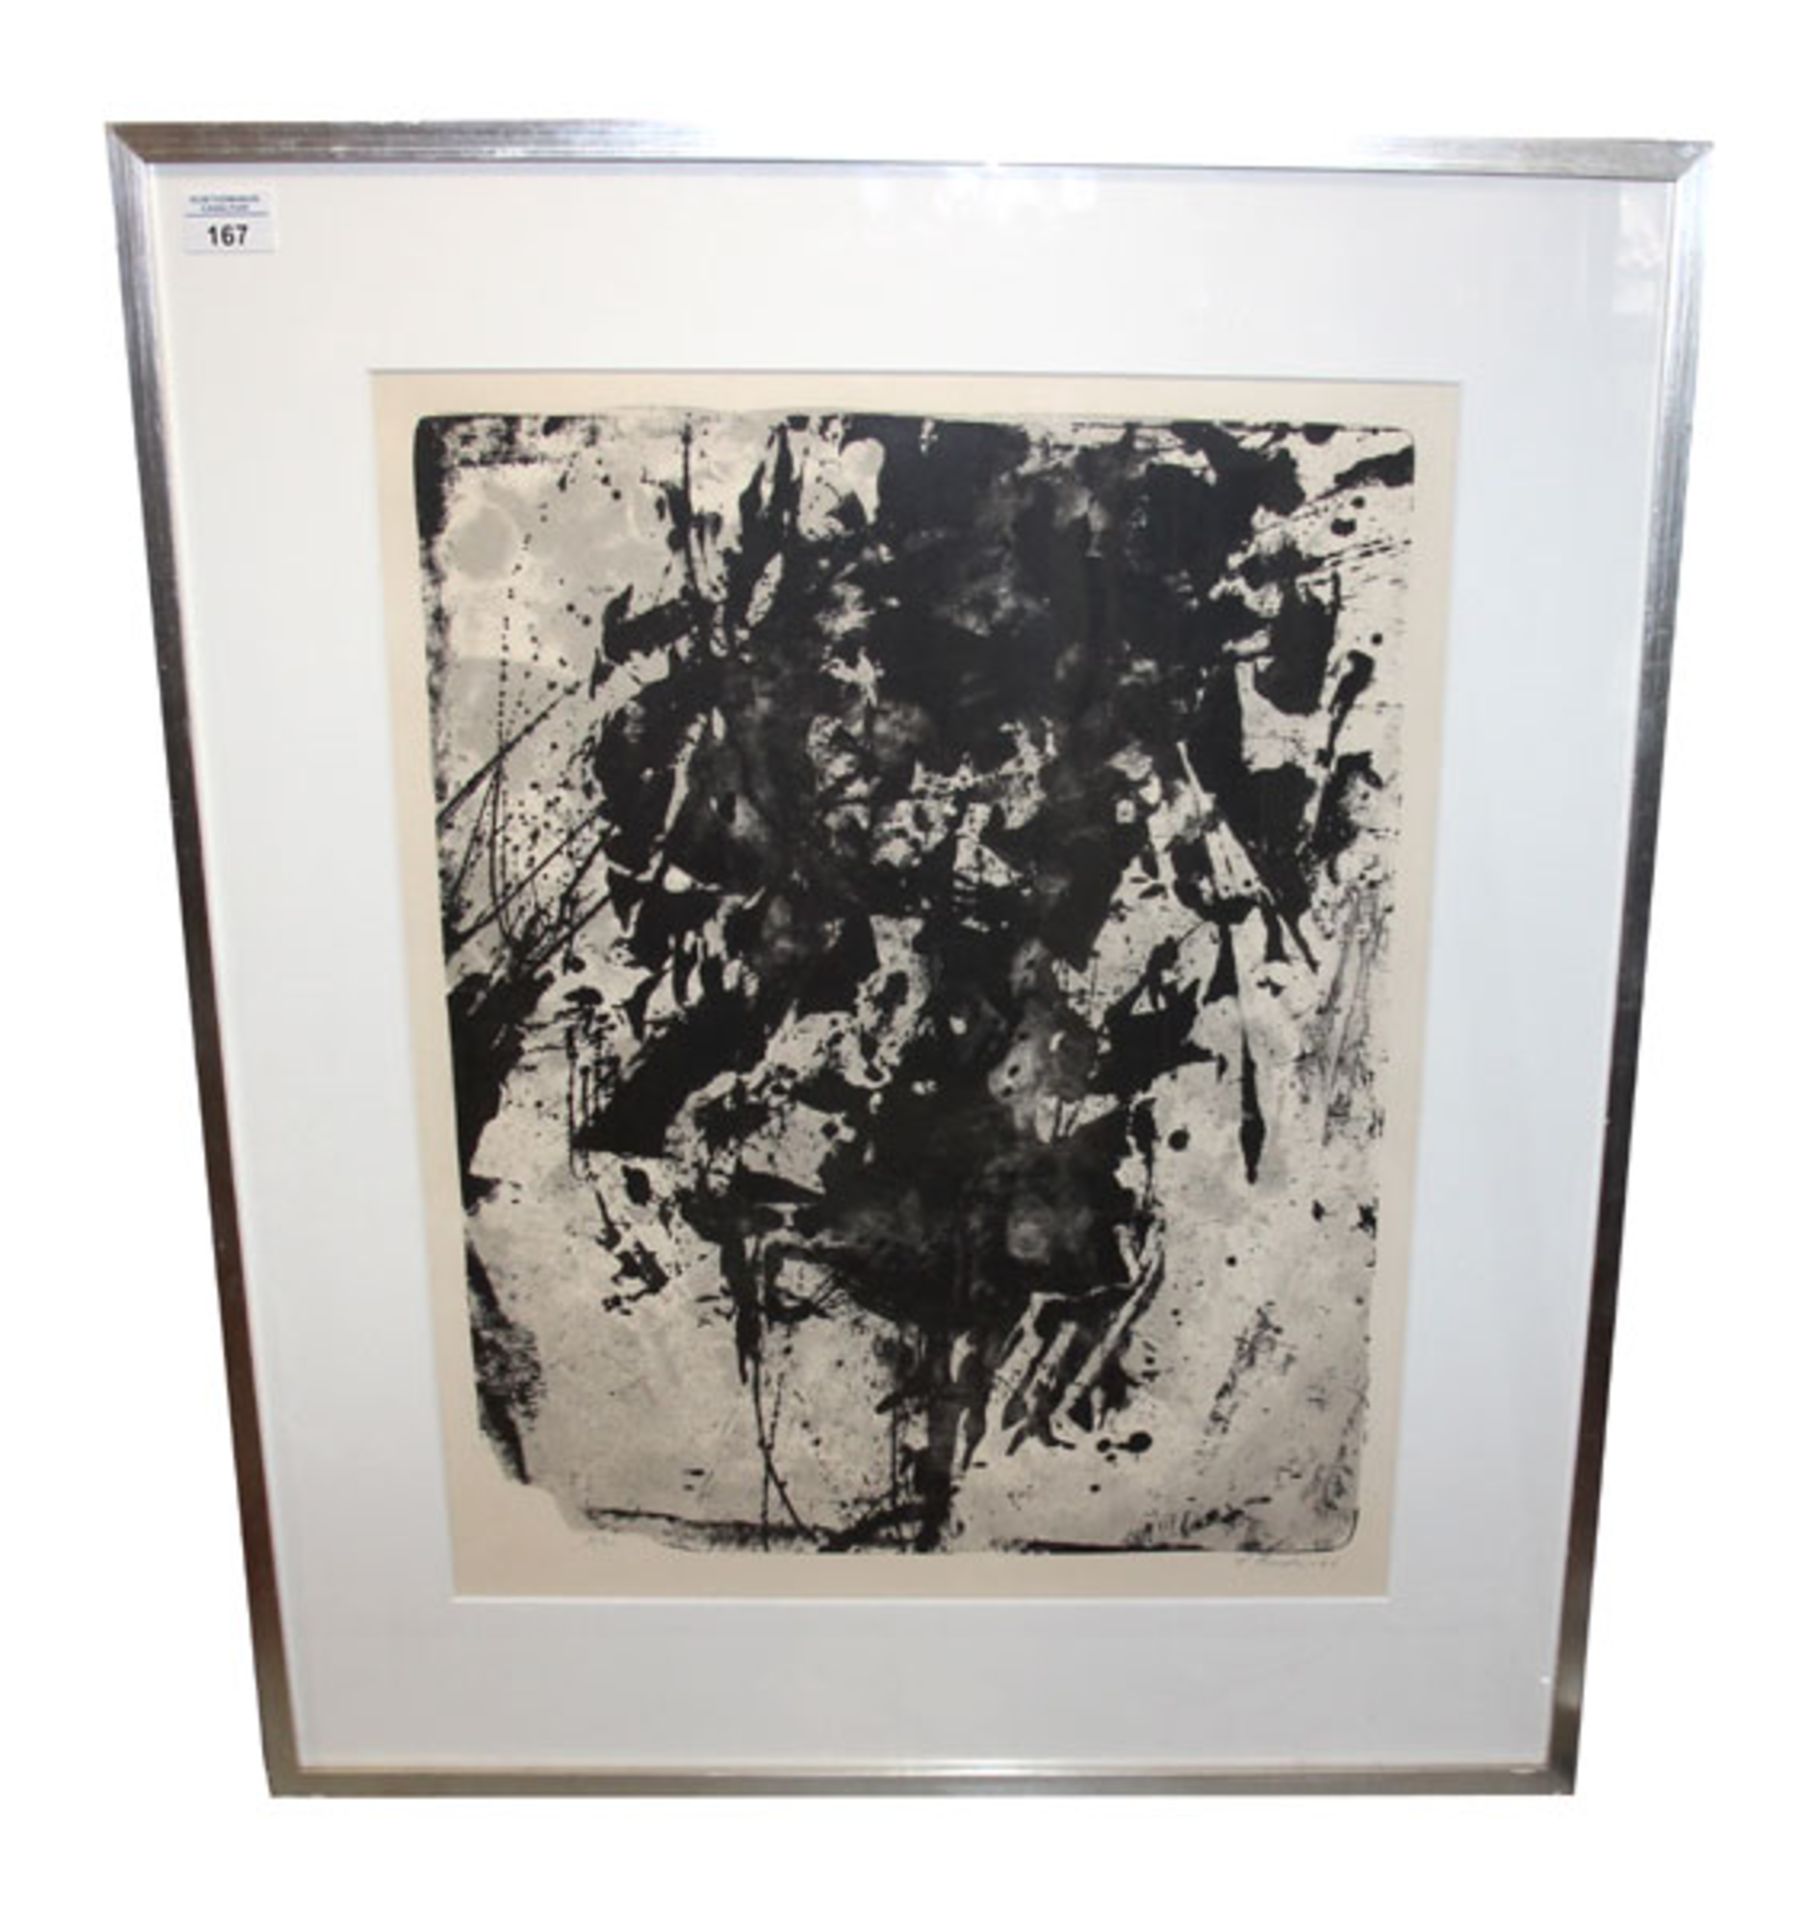 Farblithographie auf Velin 'Ohne Titel', signiert Fred Thieler, * 1916 + 1999, datiert 1960, Edition